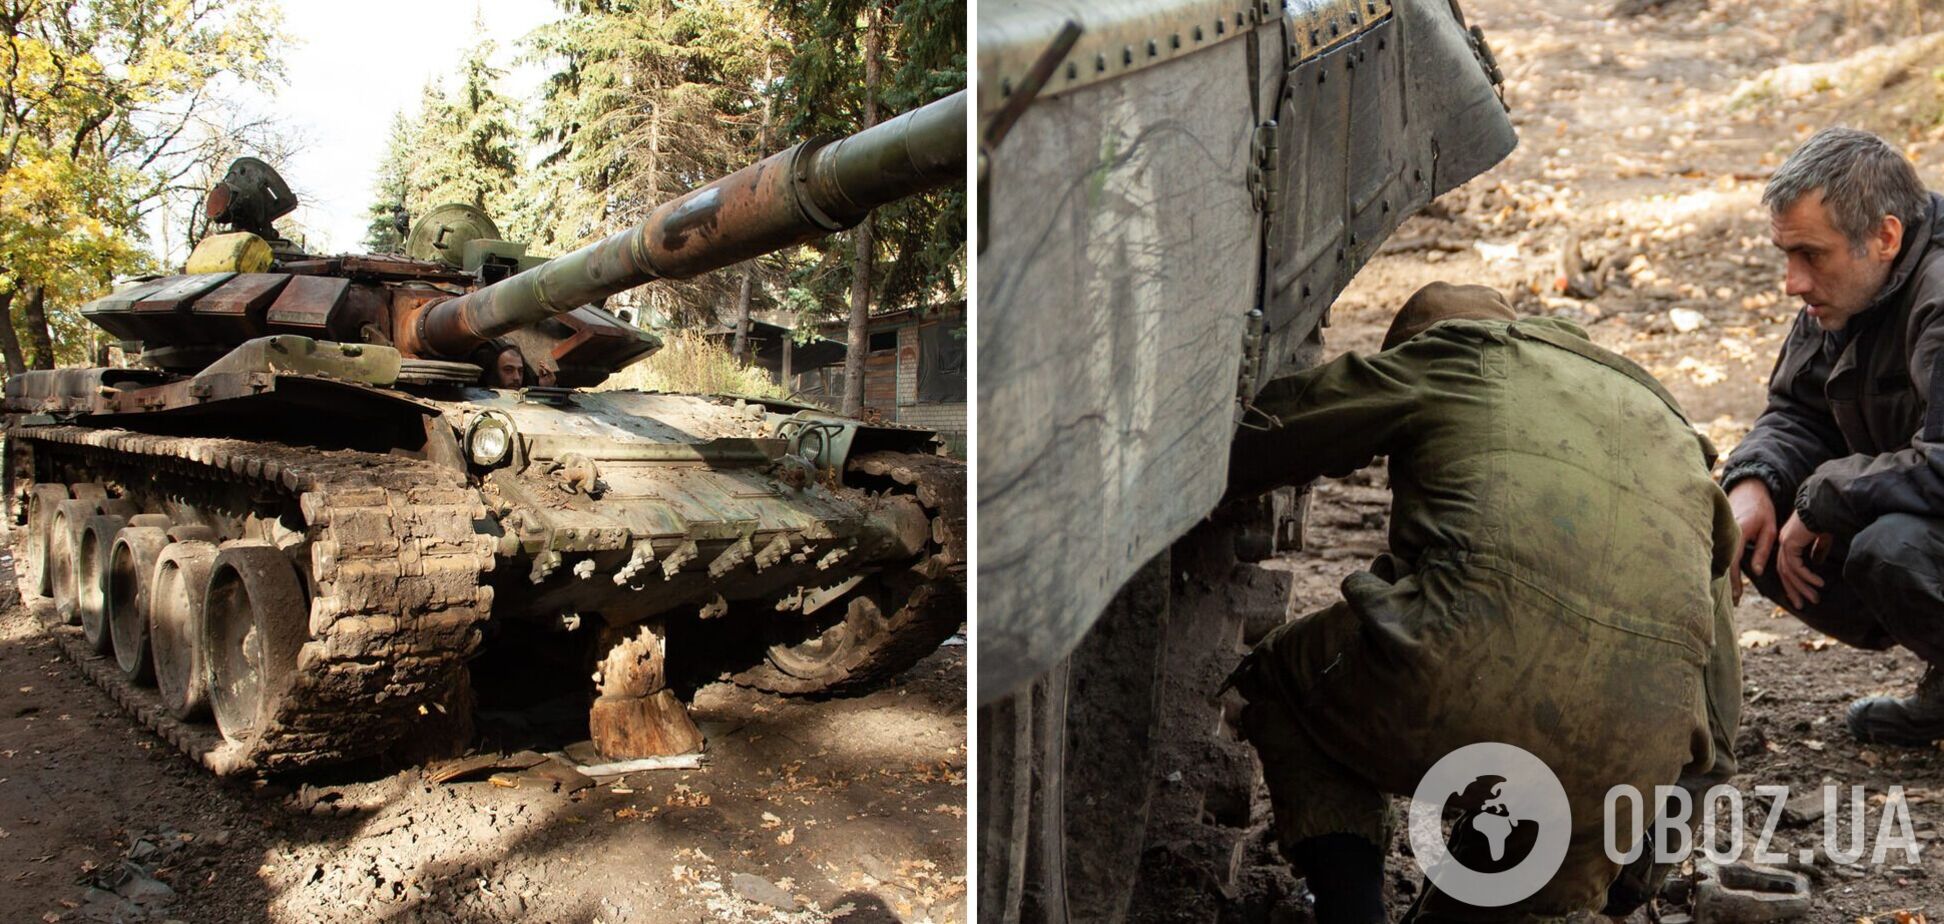 Російський ленд-ліз у дії: українські воїни захопили танк Т-72Б3, який кинули окупанти. Фото трофея